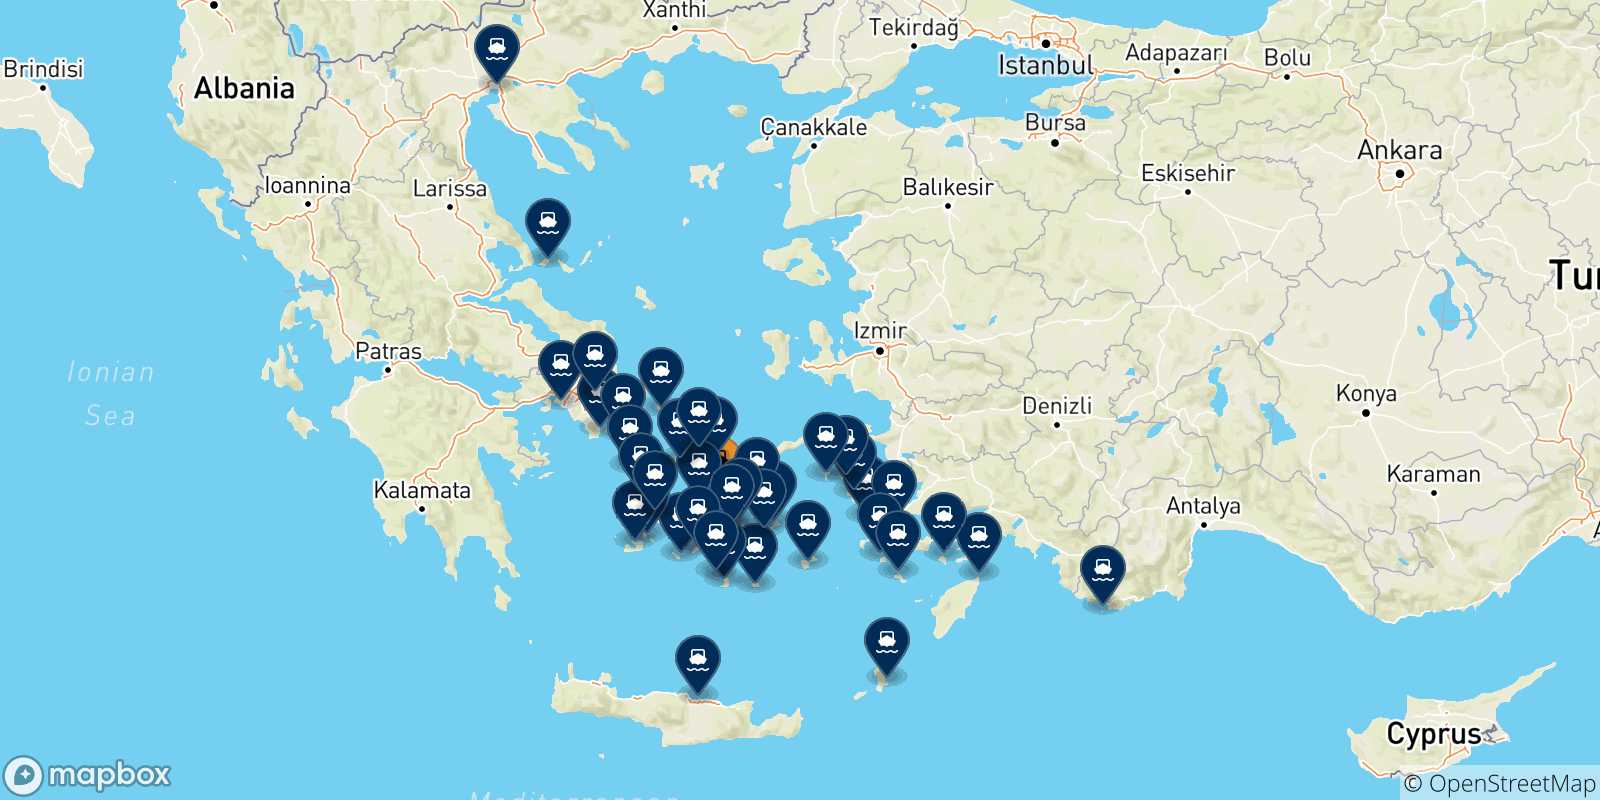 Mappa delle possibili rotte tra Naxos e la Grecia